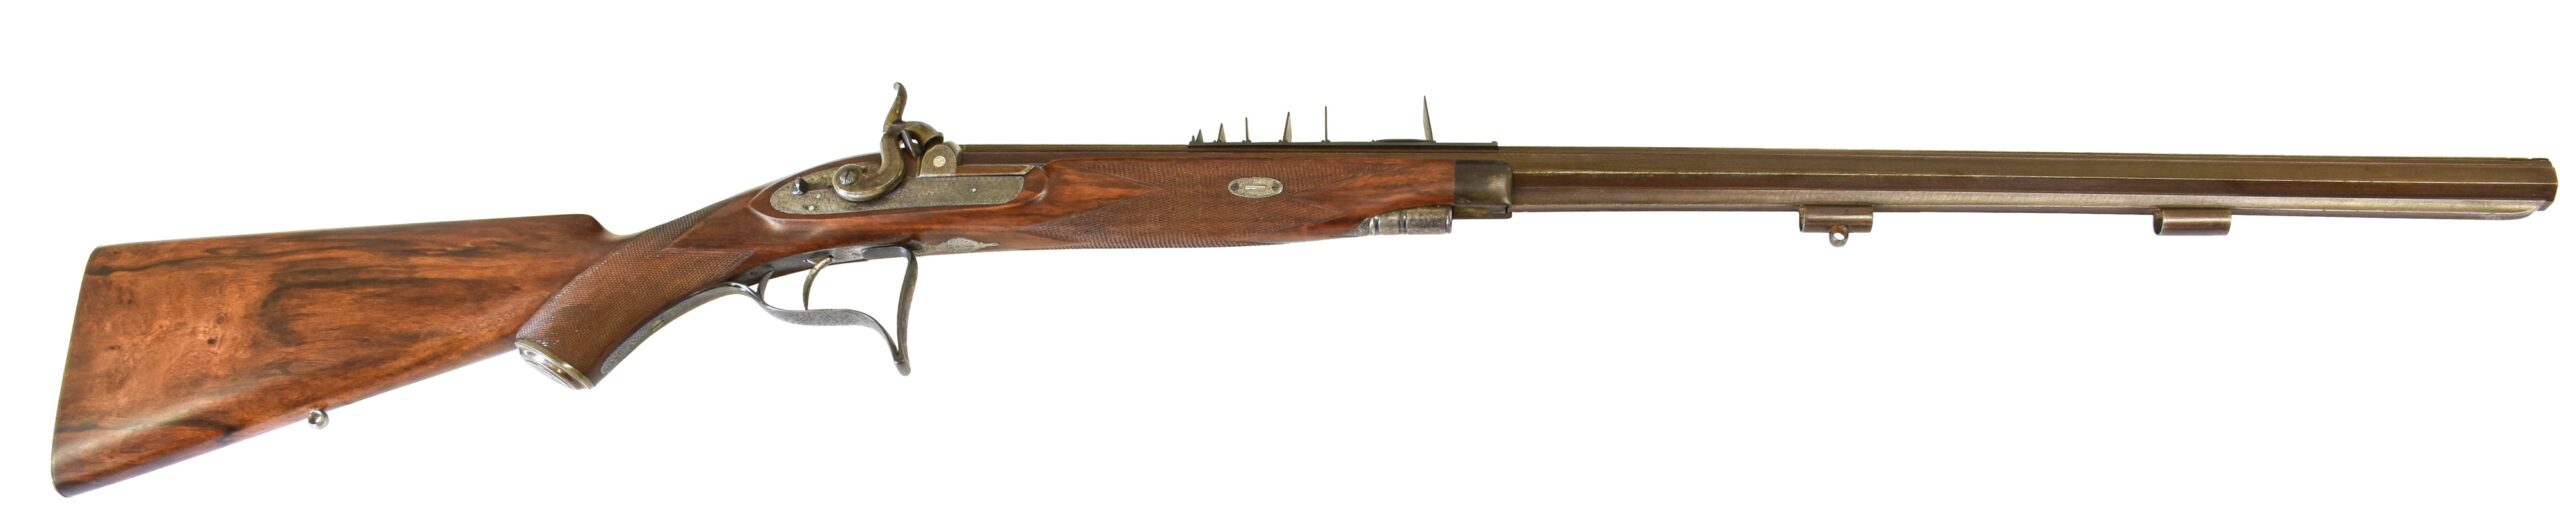 William Powell gun